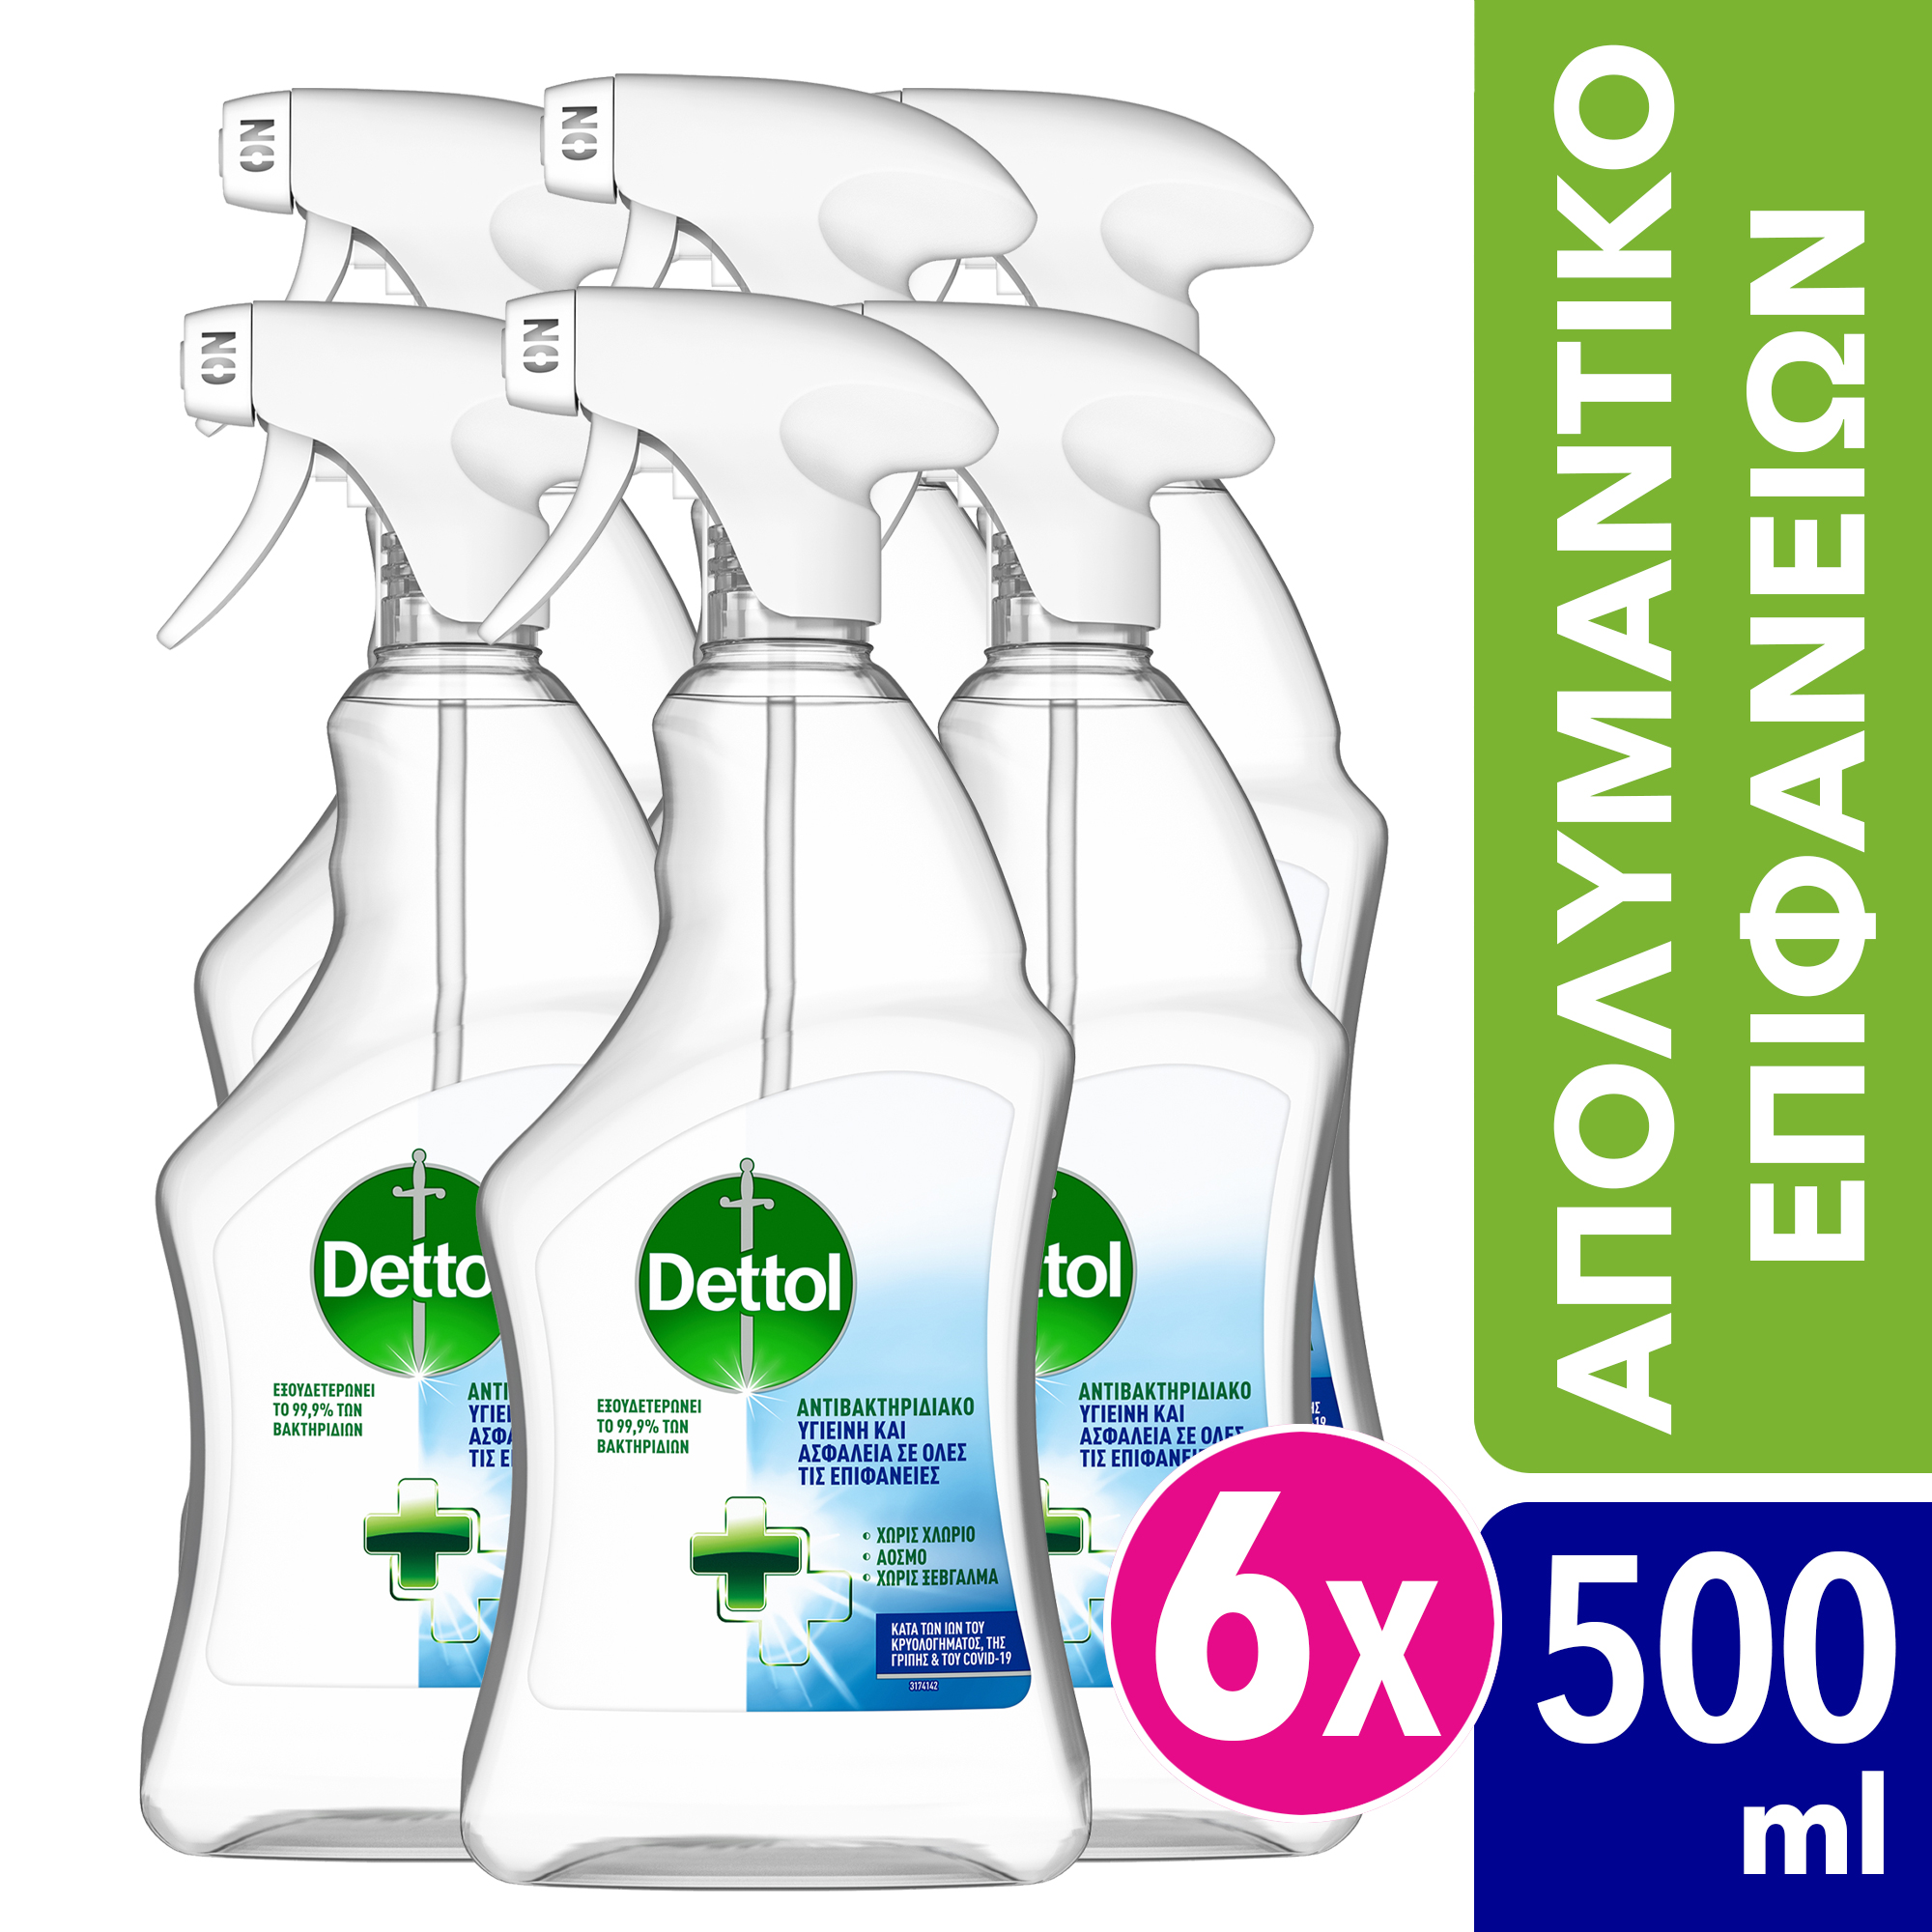 Σπρέι Γενικού Καθαρισμού Υγιεινή και Ασφάλεια Dettol (500ml) τα 6 τεμάχια -35%